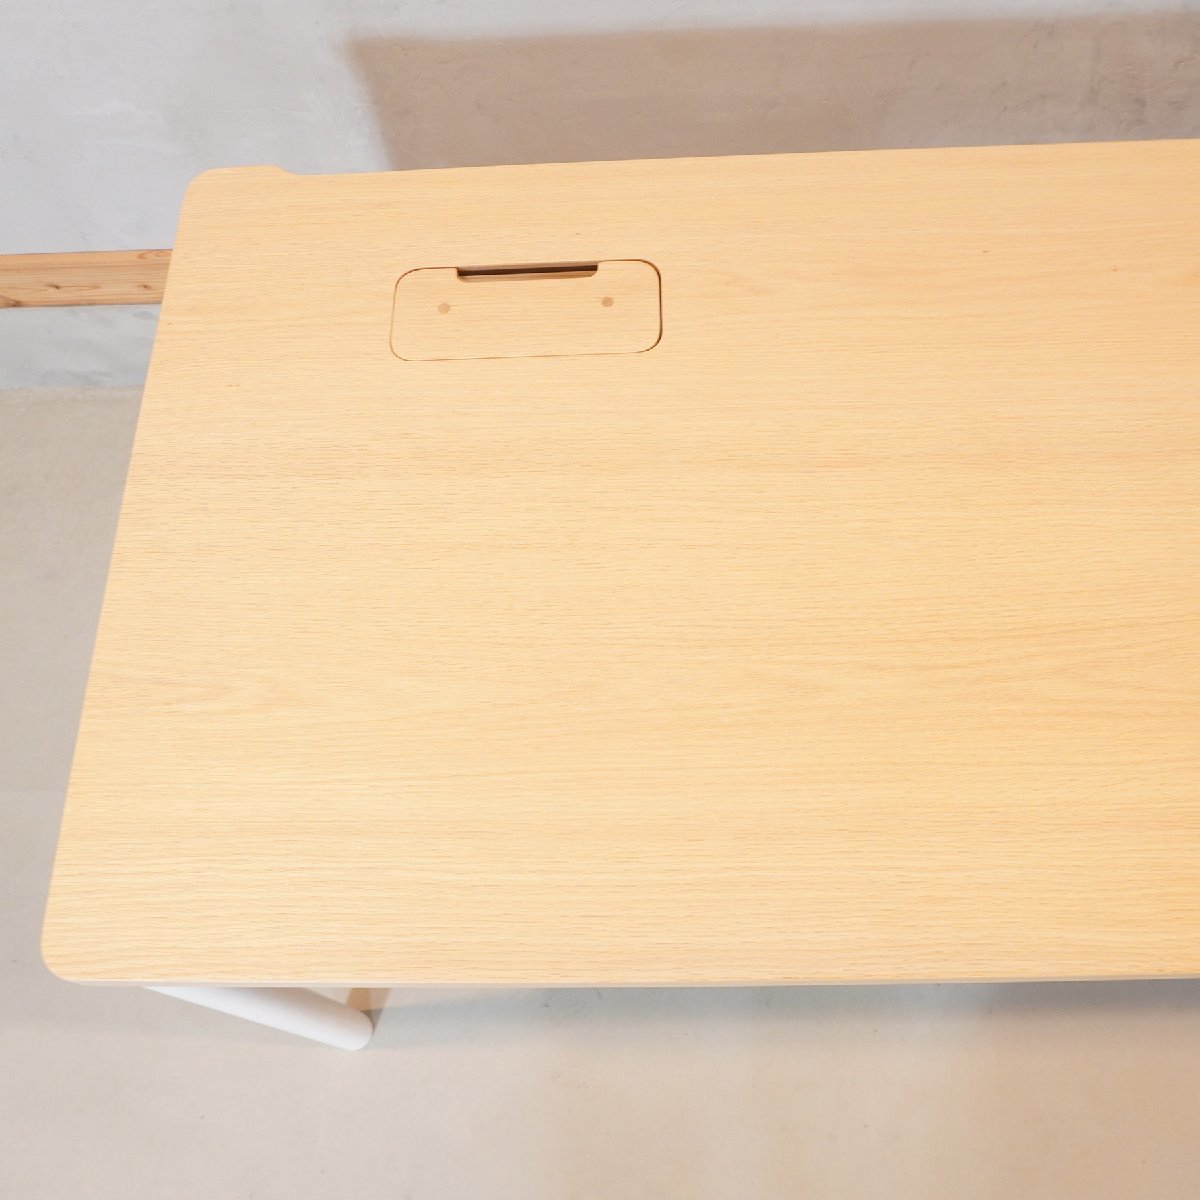 dinostinosNamine Nami ne стол компьютерный стол дуб материал выдвижной ящик имеется верстак письменный стол простой натуральный Северная Европа стиль DF123